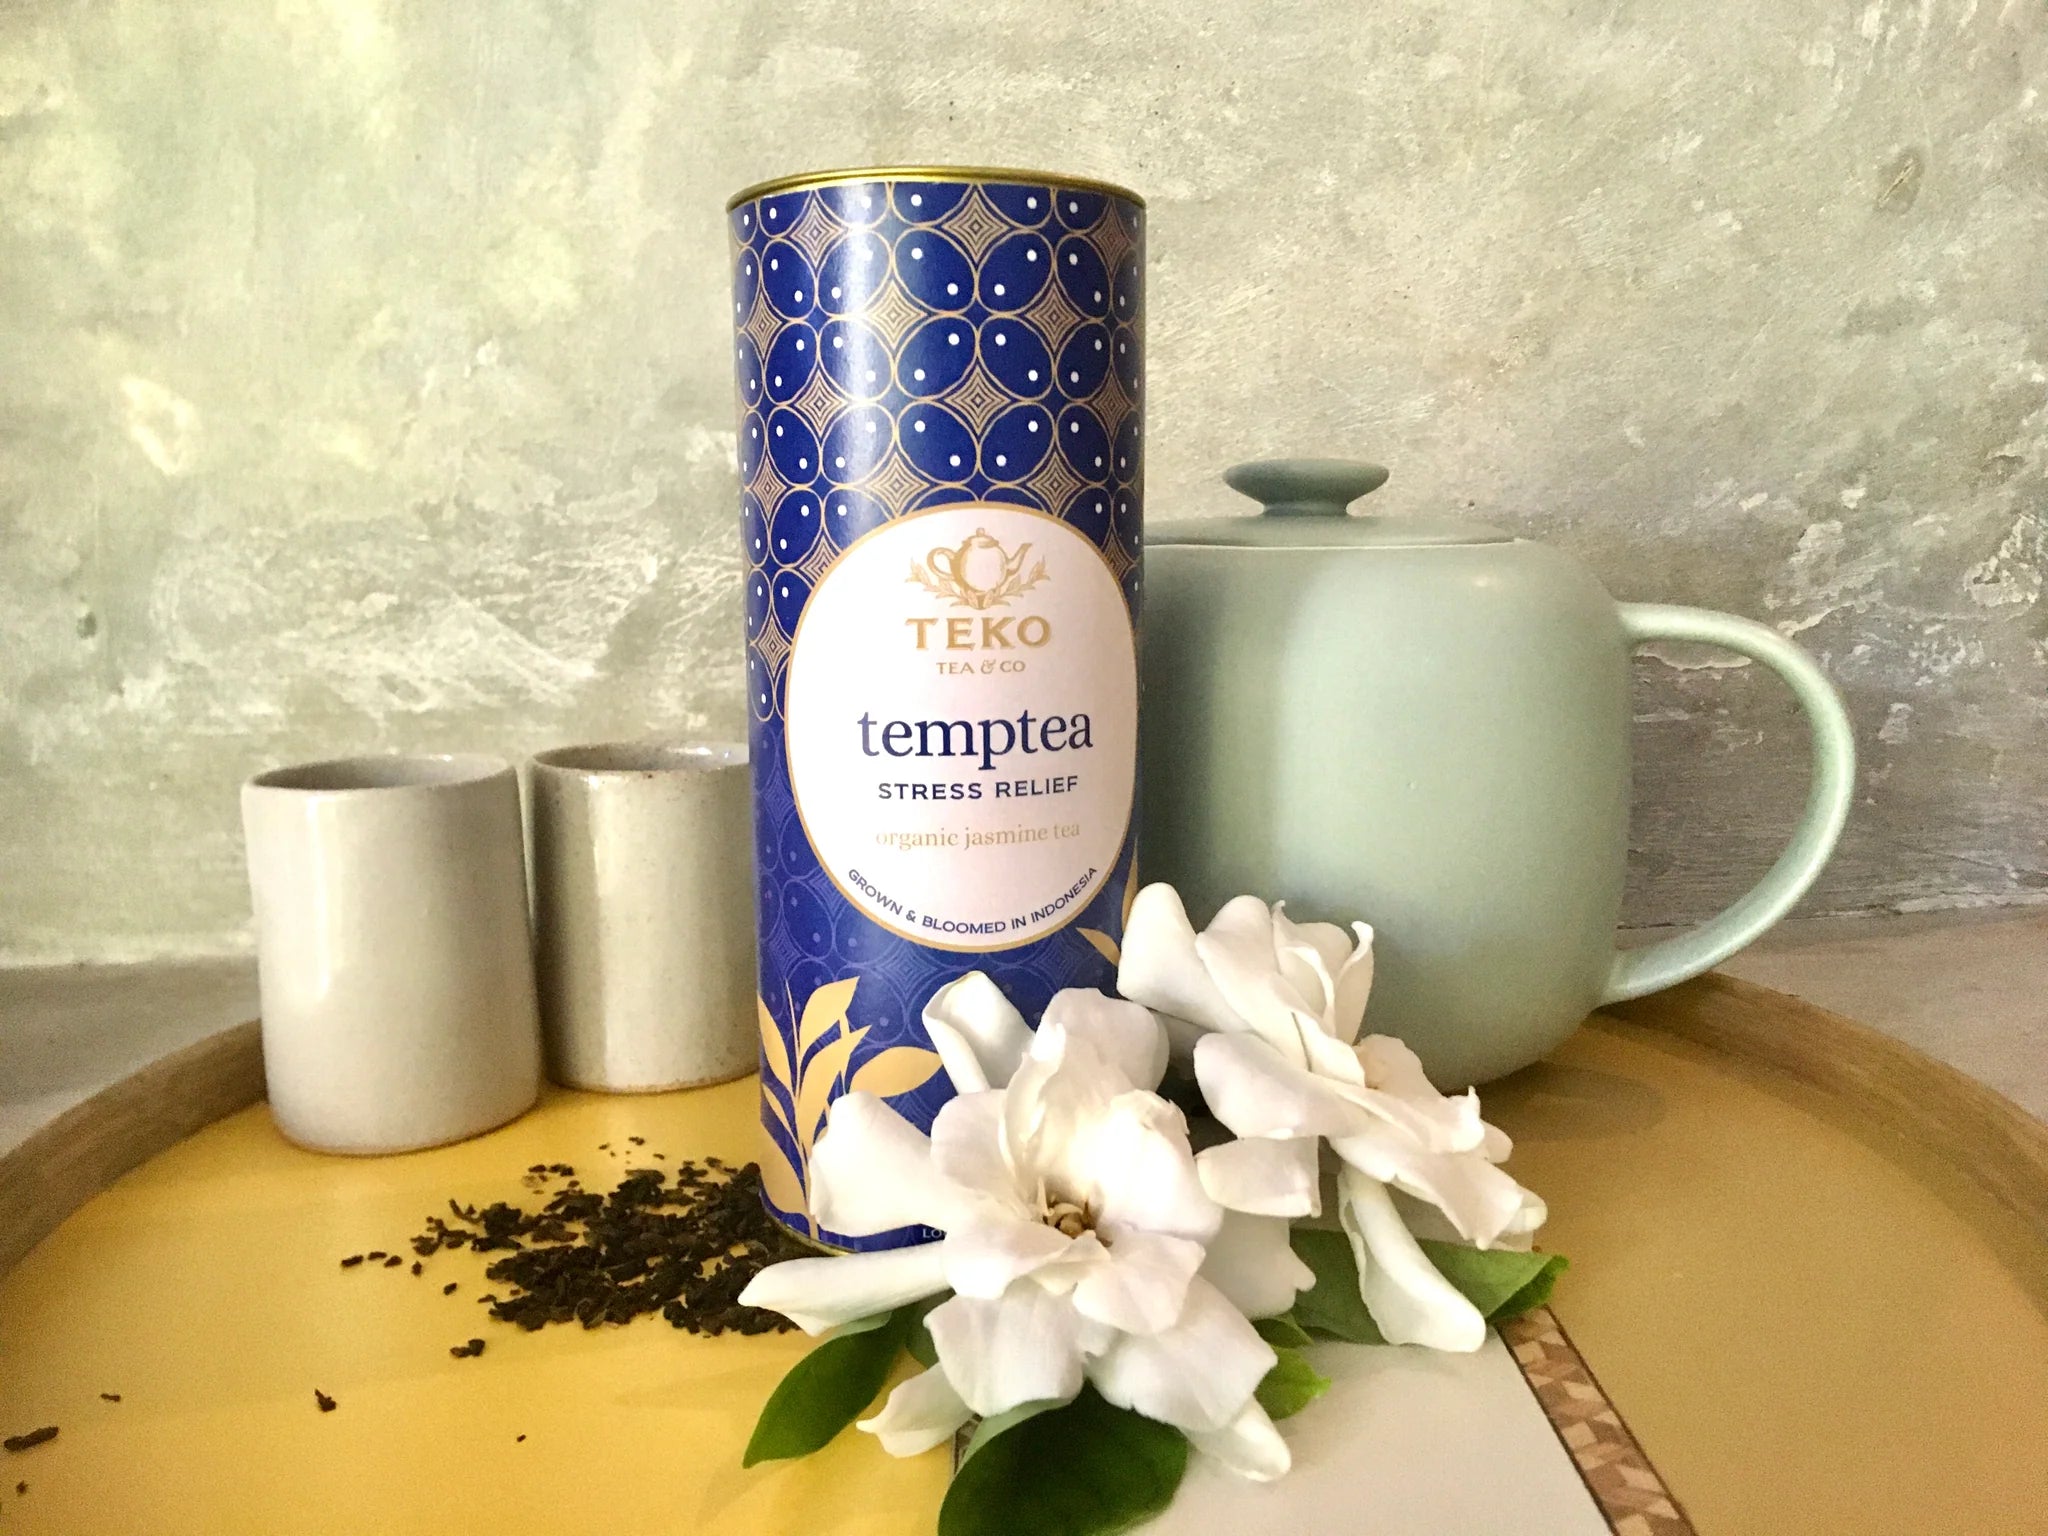 Teko Temptea - Teabags in Tubes